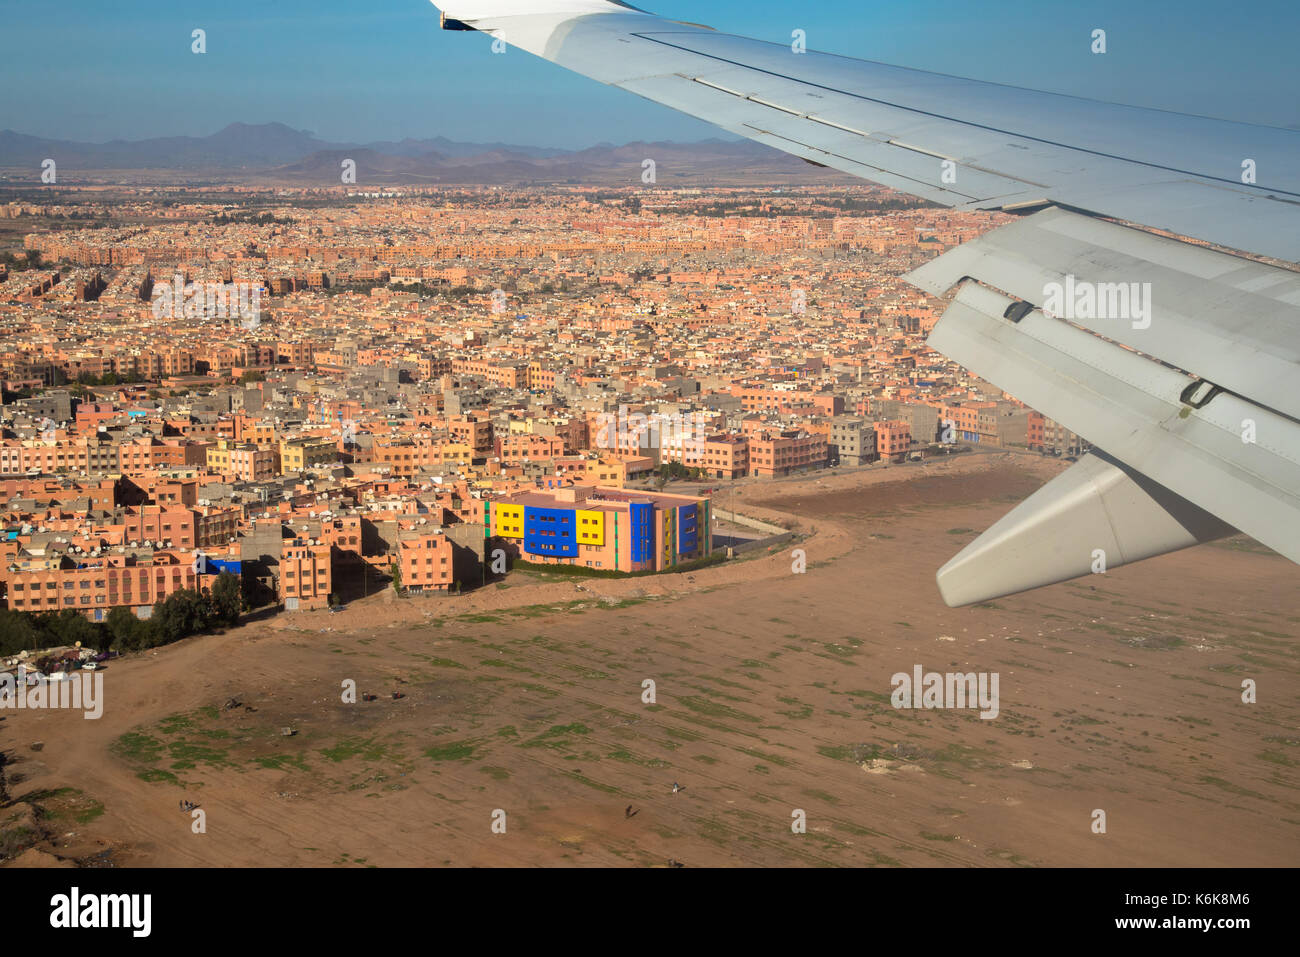 Luftaufnahme von Marrakesch vom Flugzeug Landung am Flughafen Marrakesch, Marokko Stockfoto